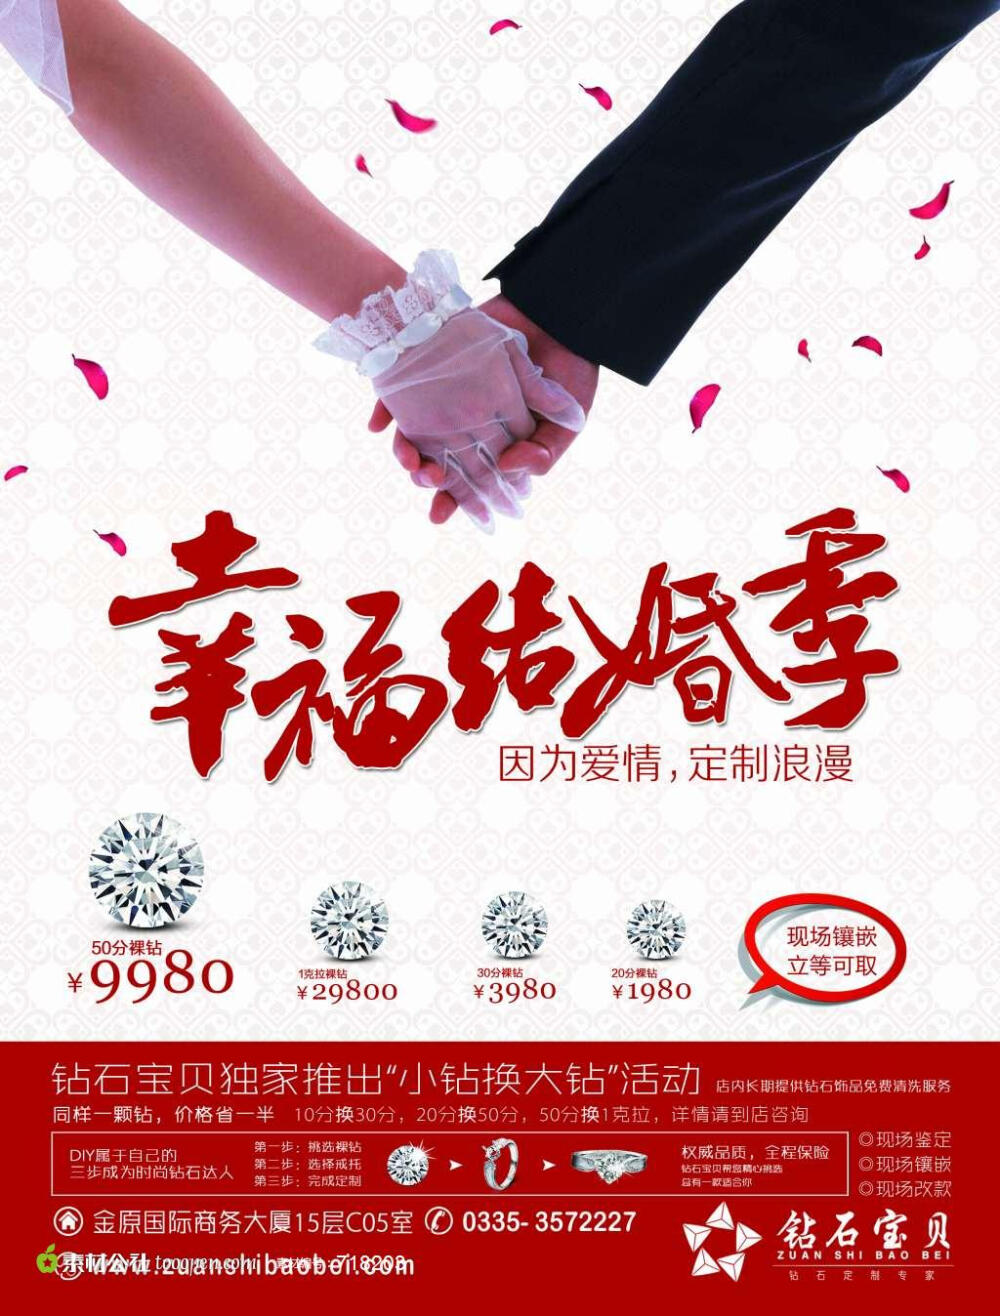 结婚喜庆专题海报专题设计 爱牵手高清PSD素材广告海报素材